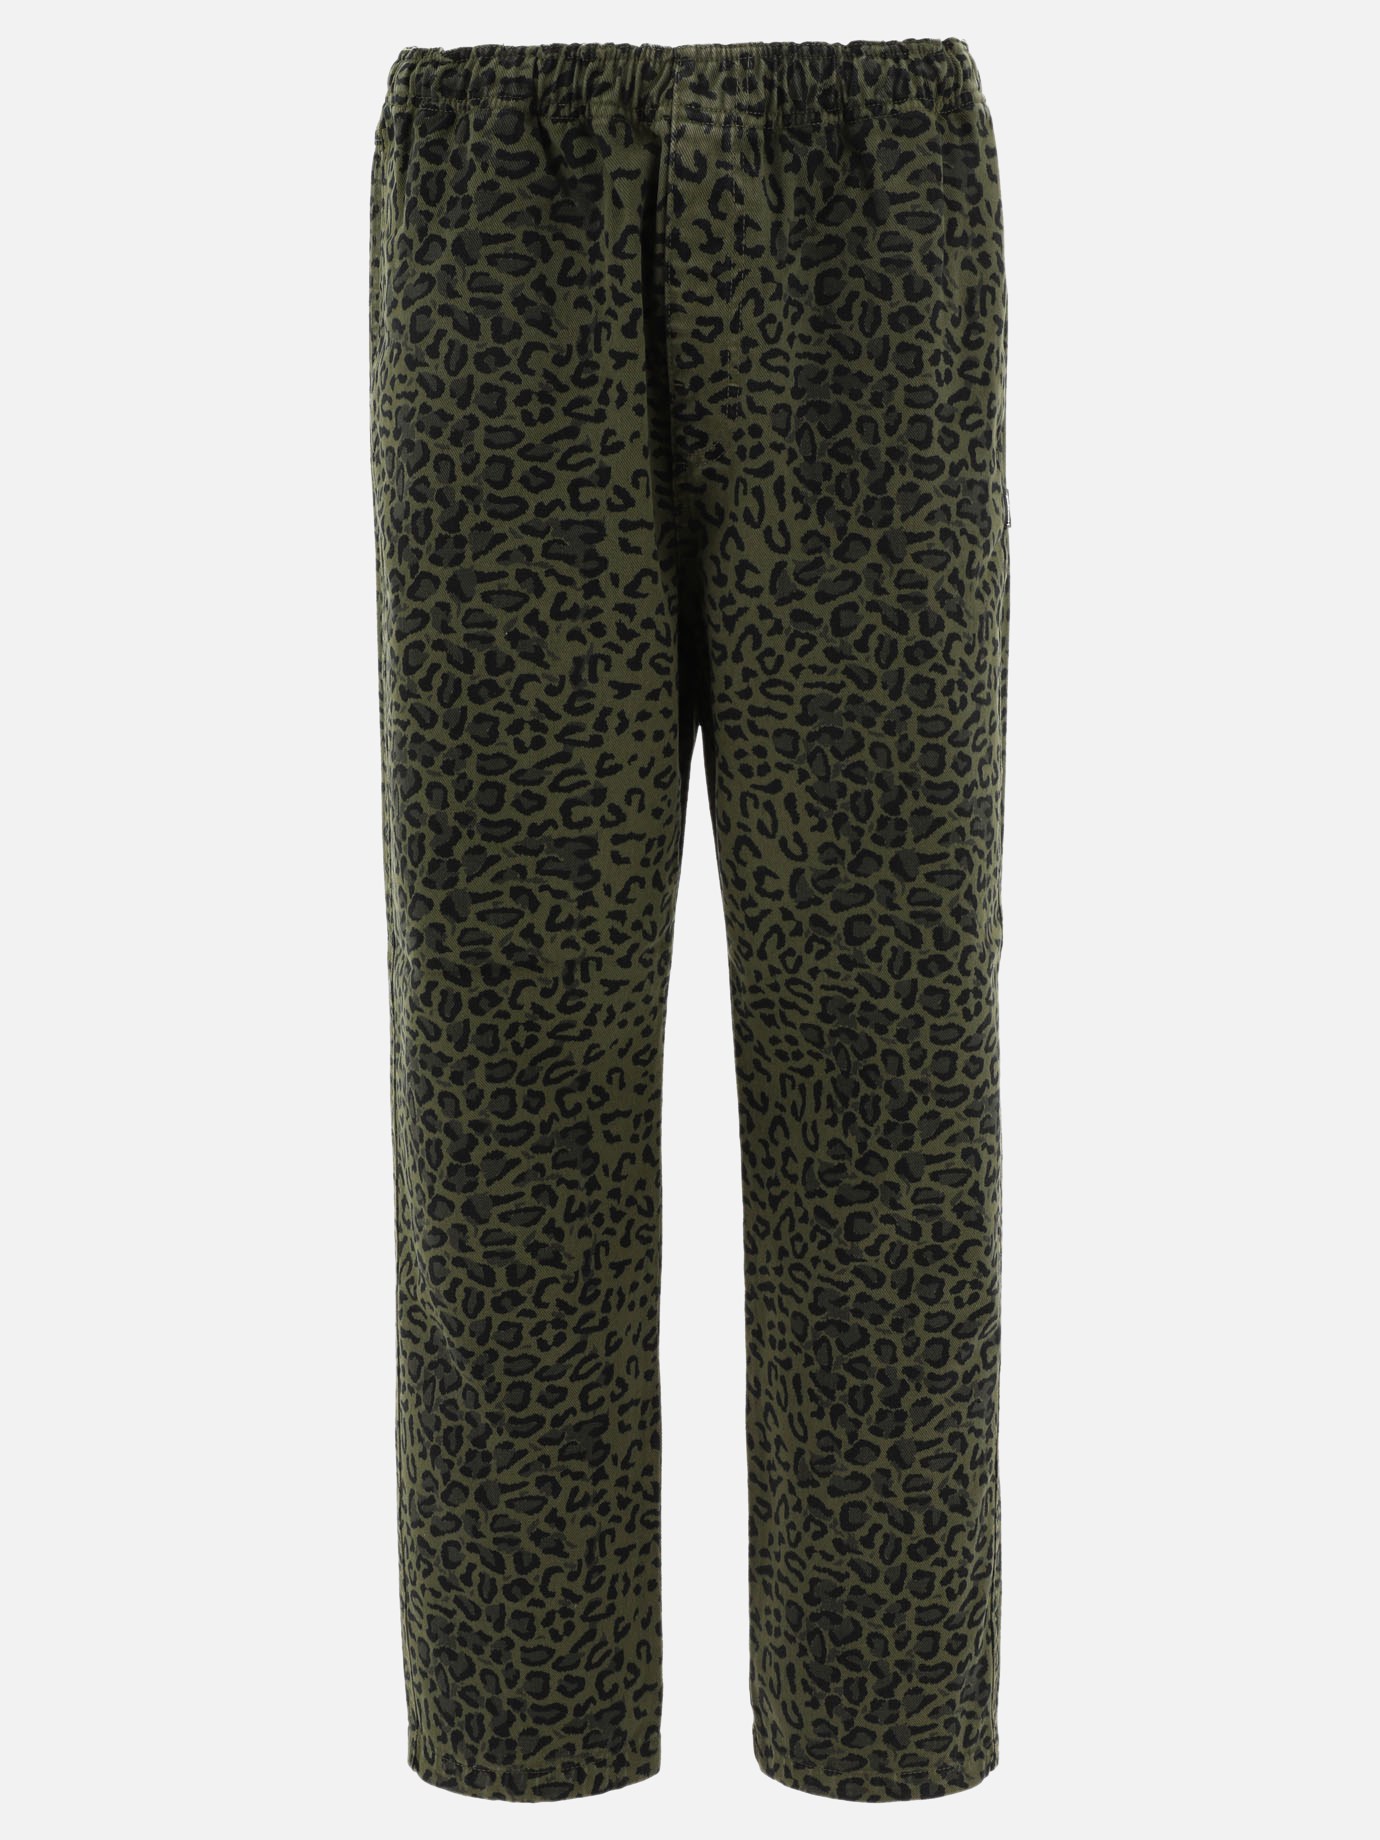 Pantaloni stretch leopardatiby Stüssy - 3